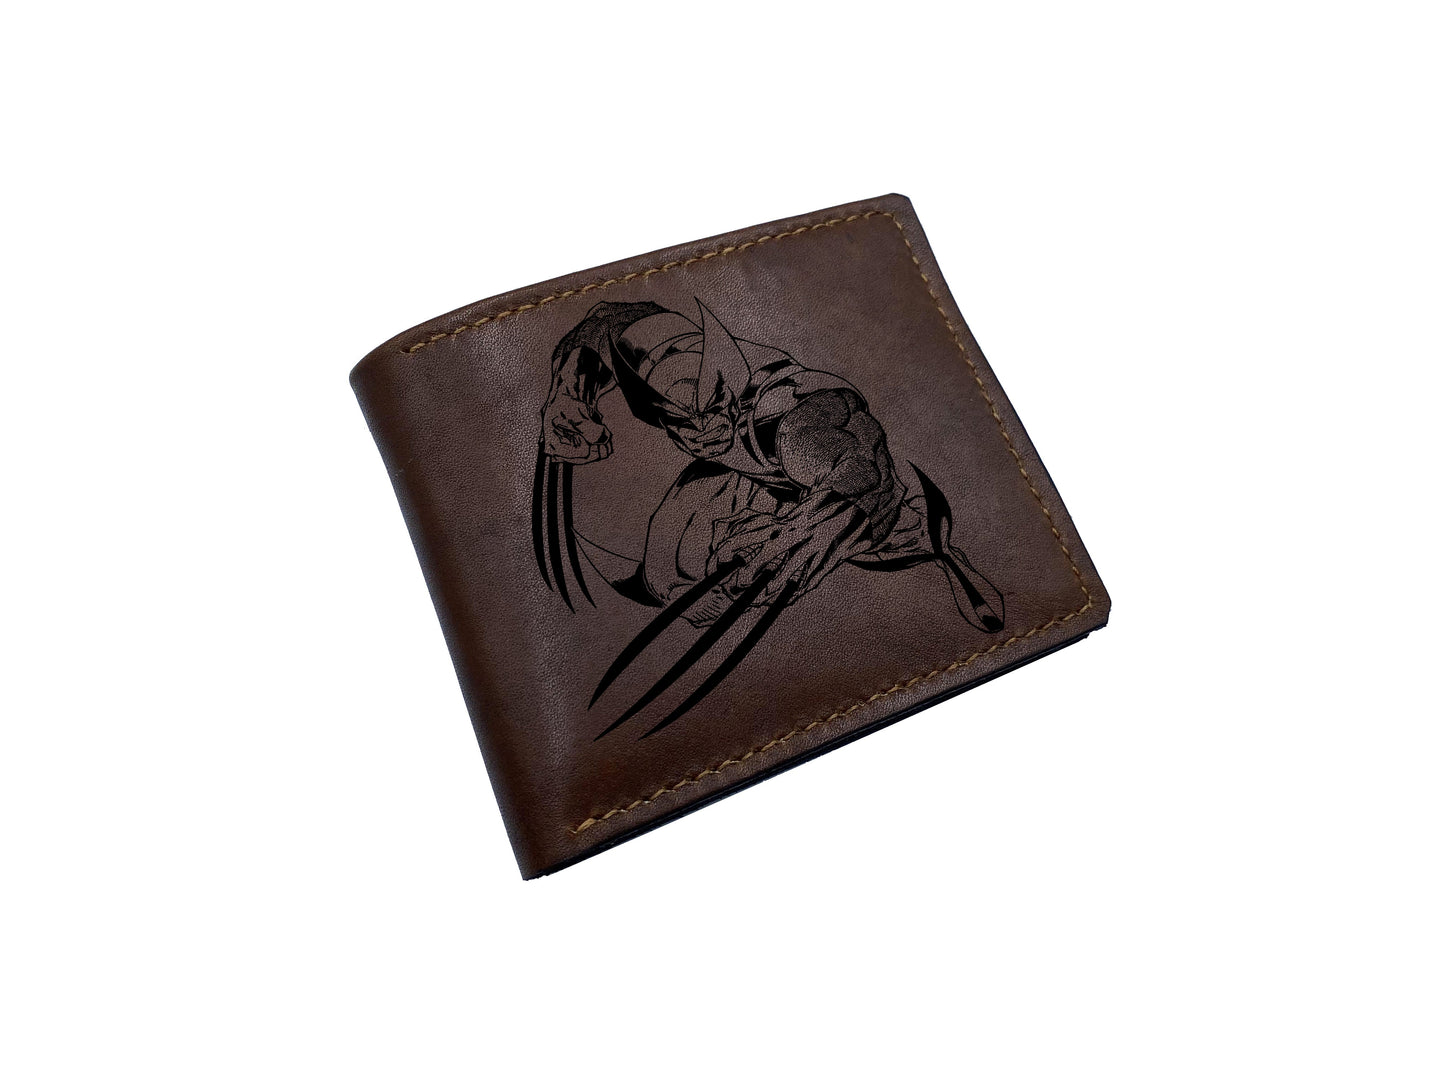 Mayan Corner - Wolverine Logan superheroes leather handmade wallet, superheroes marvel wallet for men - 2710222